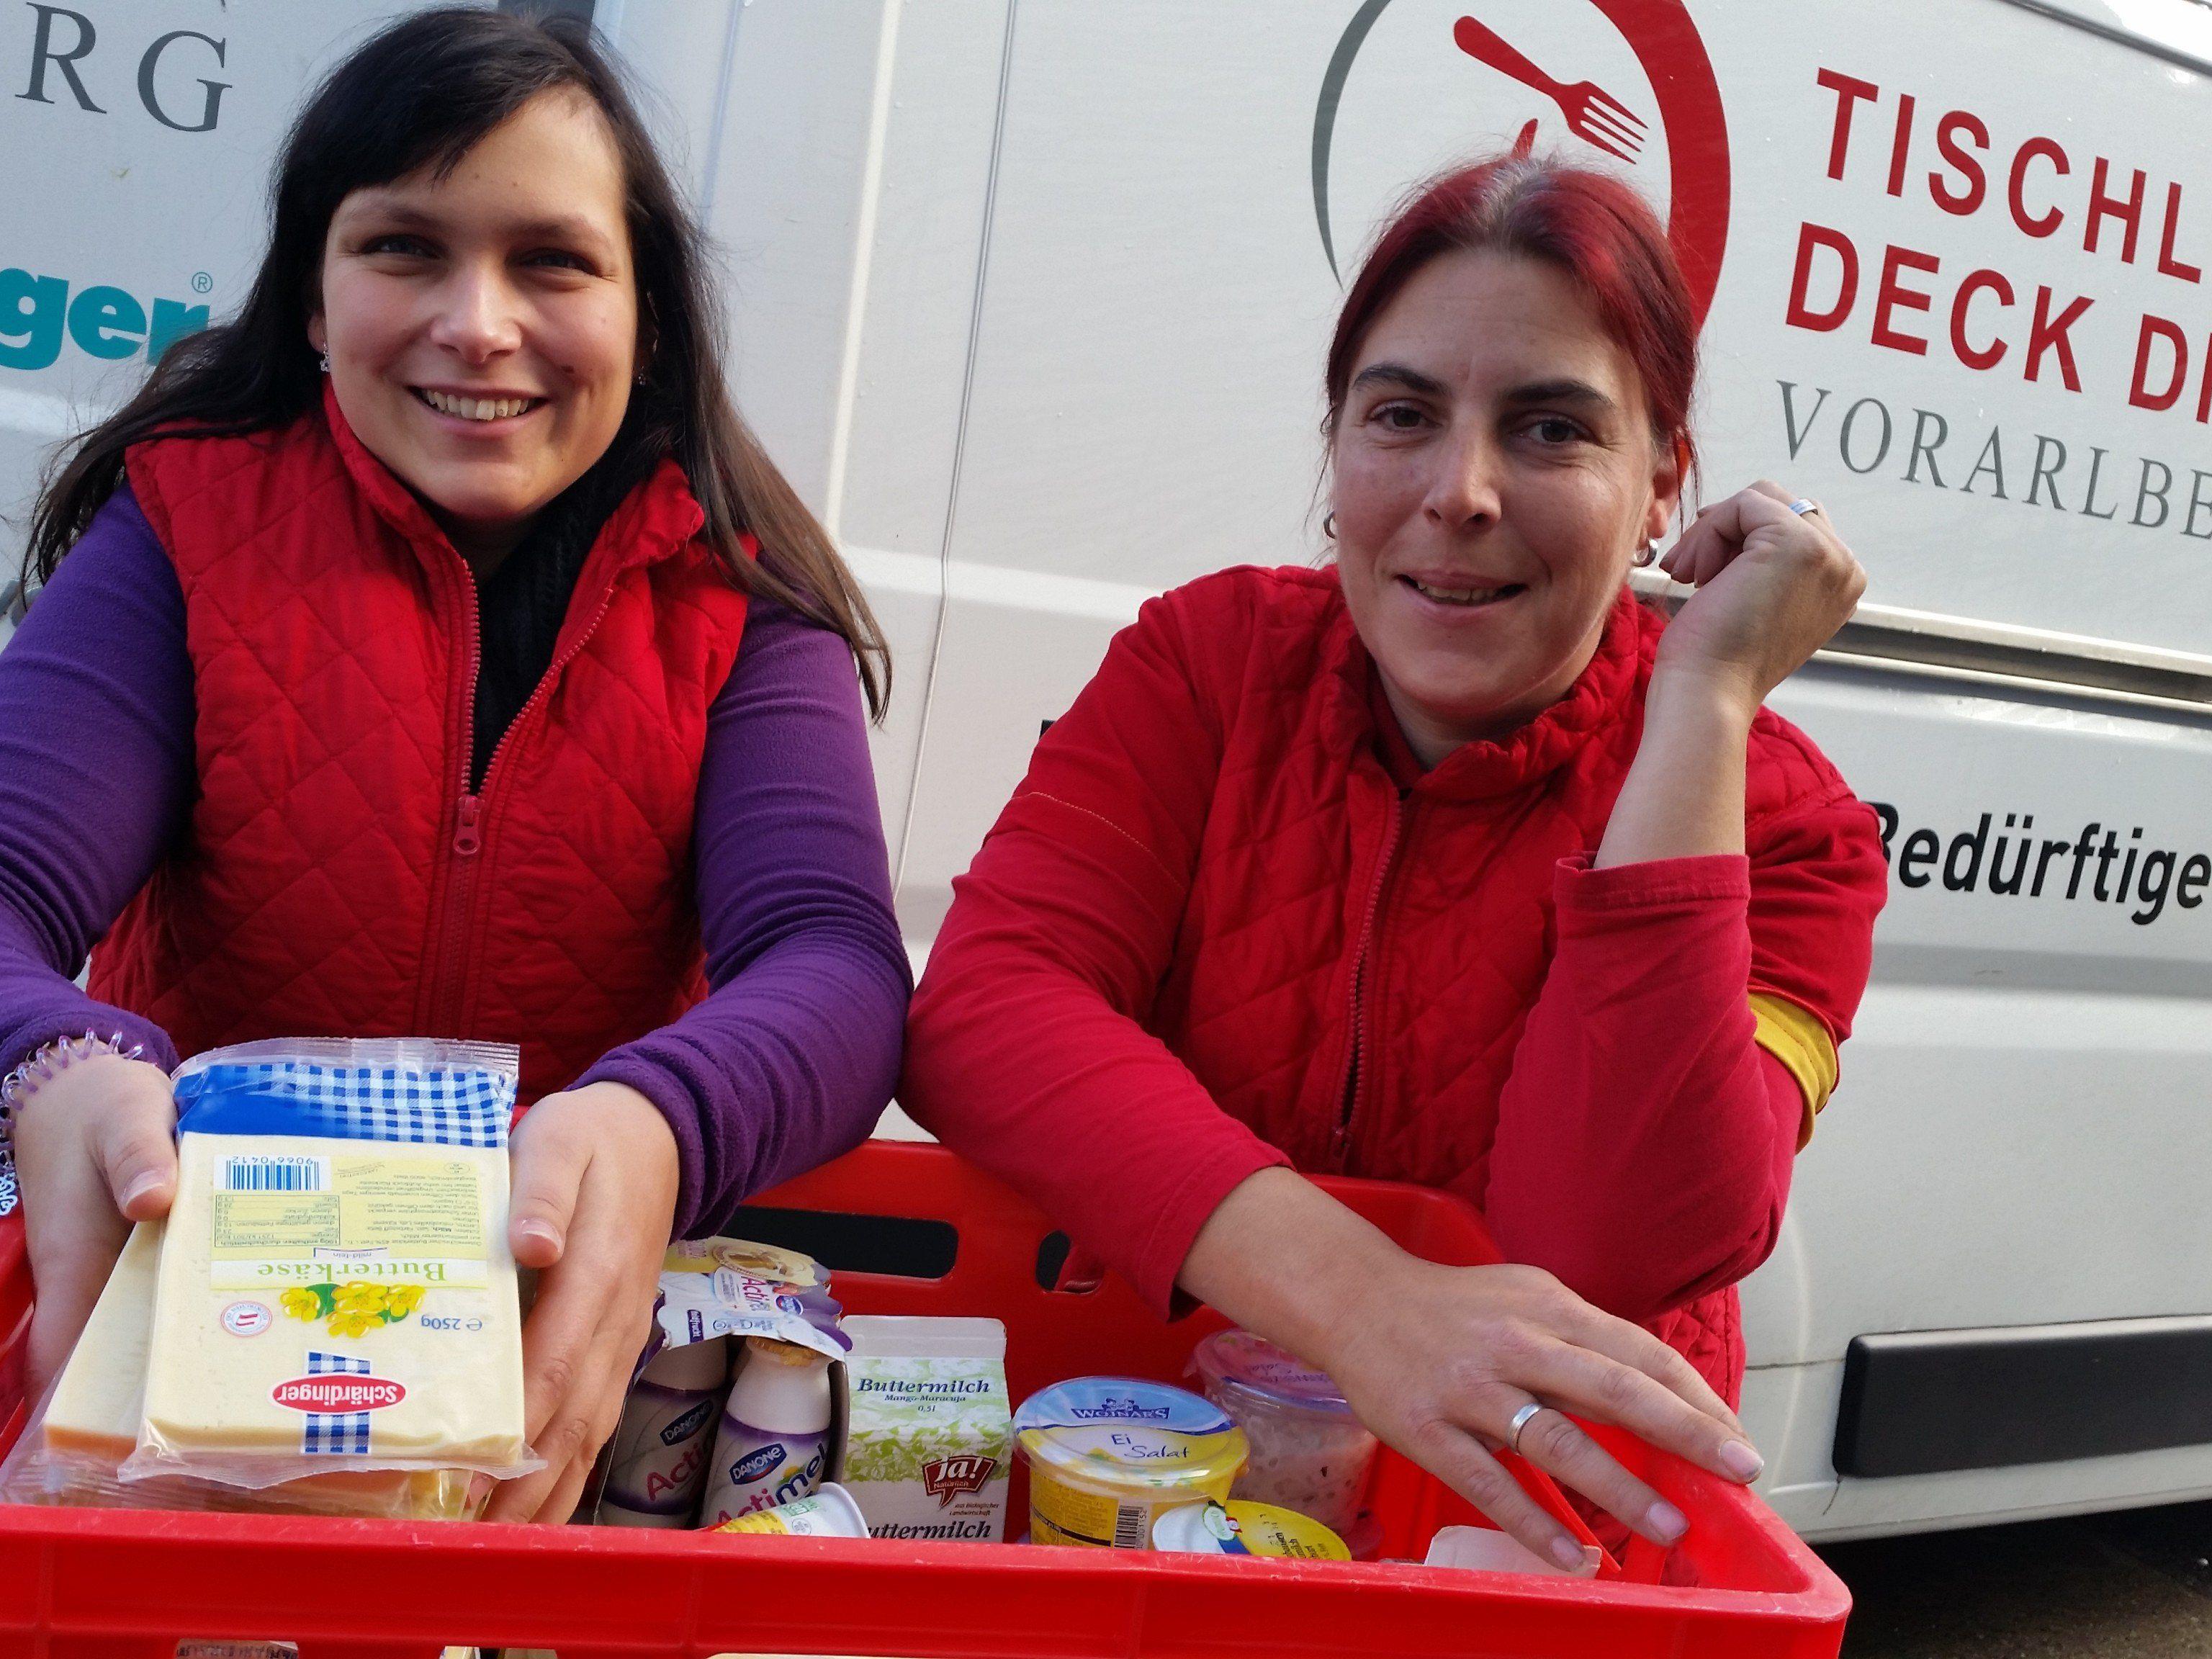 Petra Hagen und Melanie Maranas vom Billa-Feldkirch beim Bahnhof unterstützen mit ihrem Team engagiert die Tischlein deck Dich-Aktion